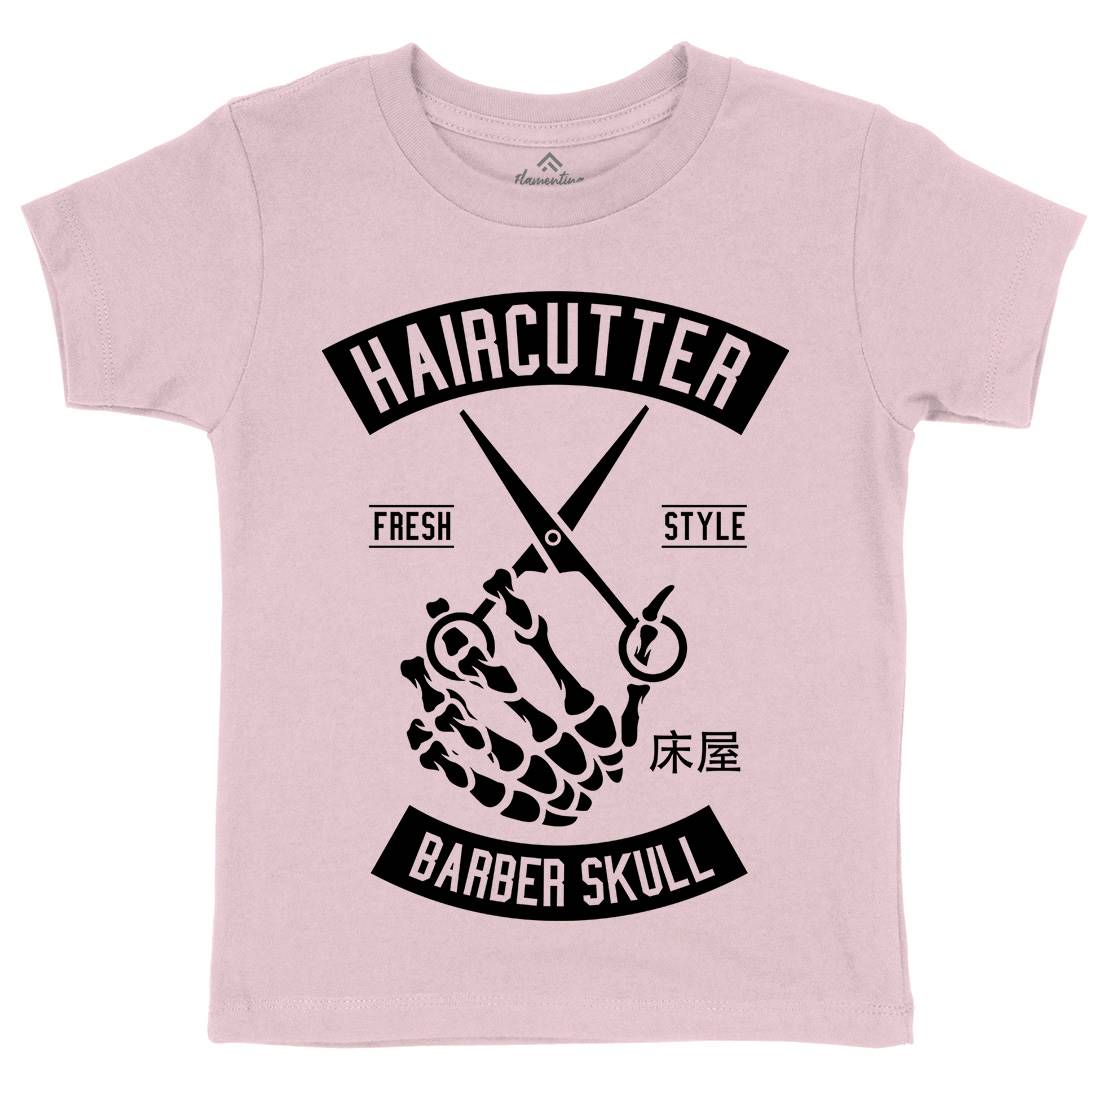 Haircutter Kids Crew Neck T-Shirt Barber A237